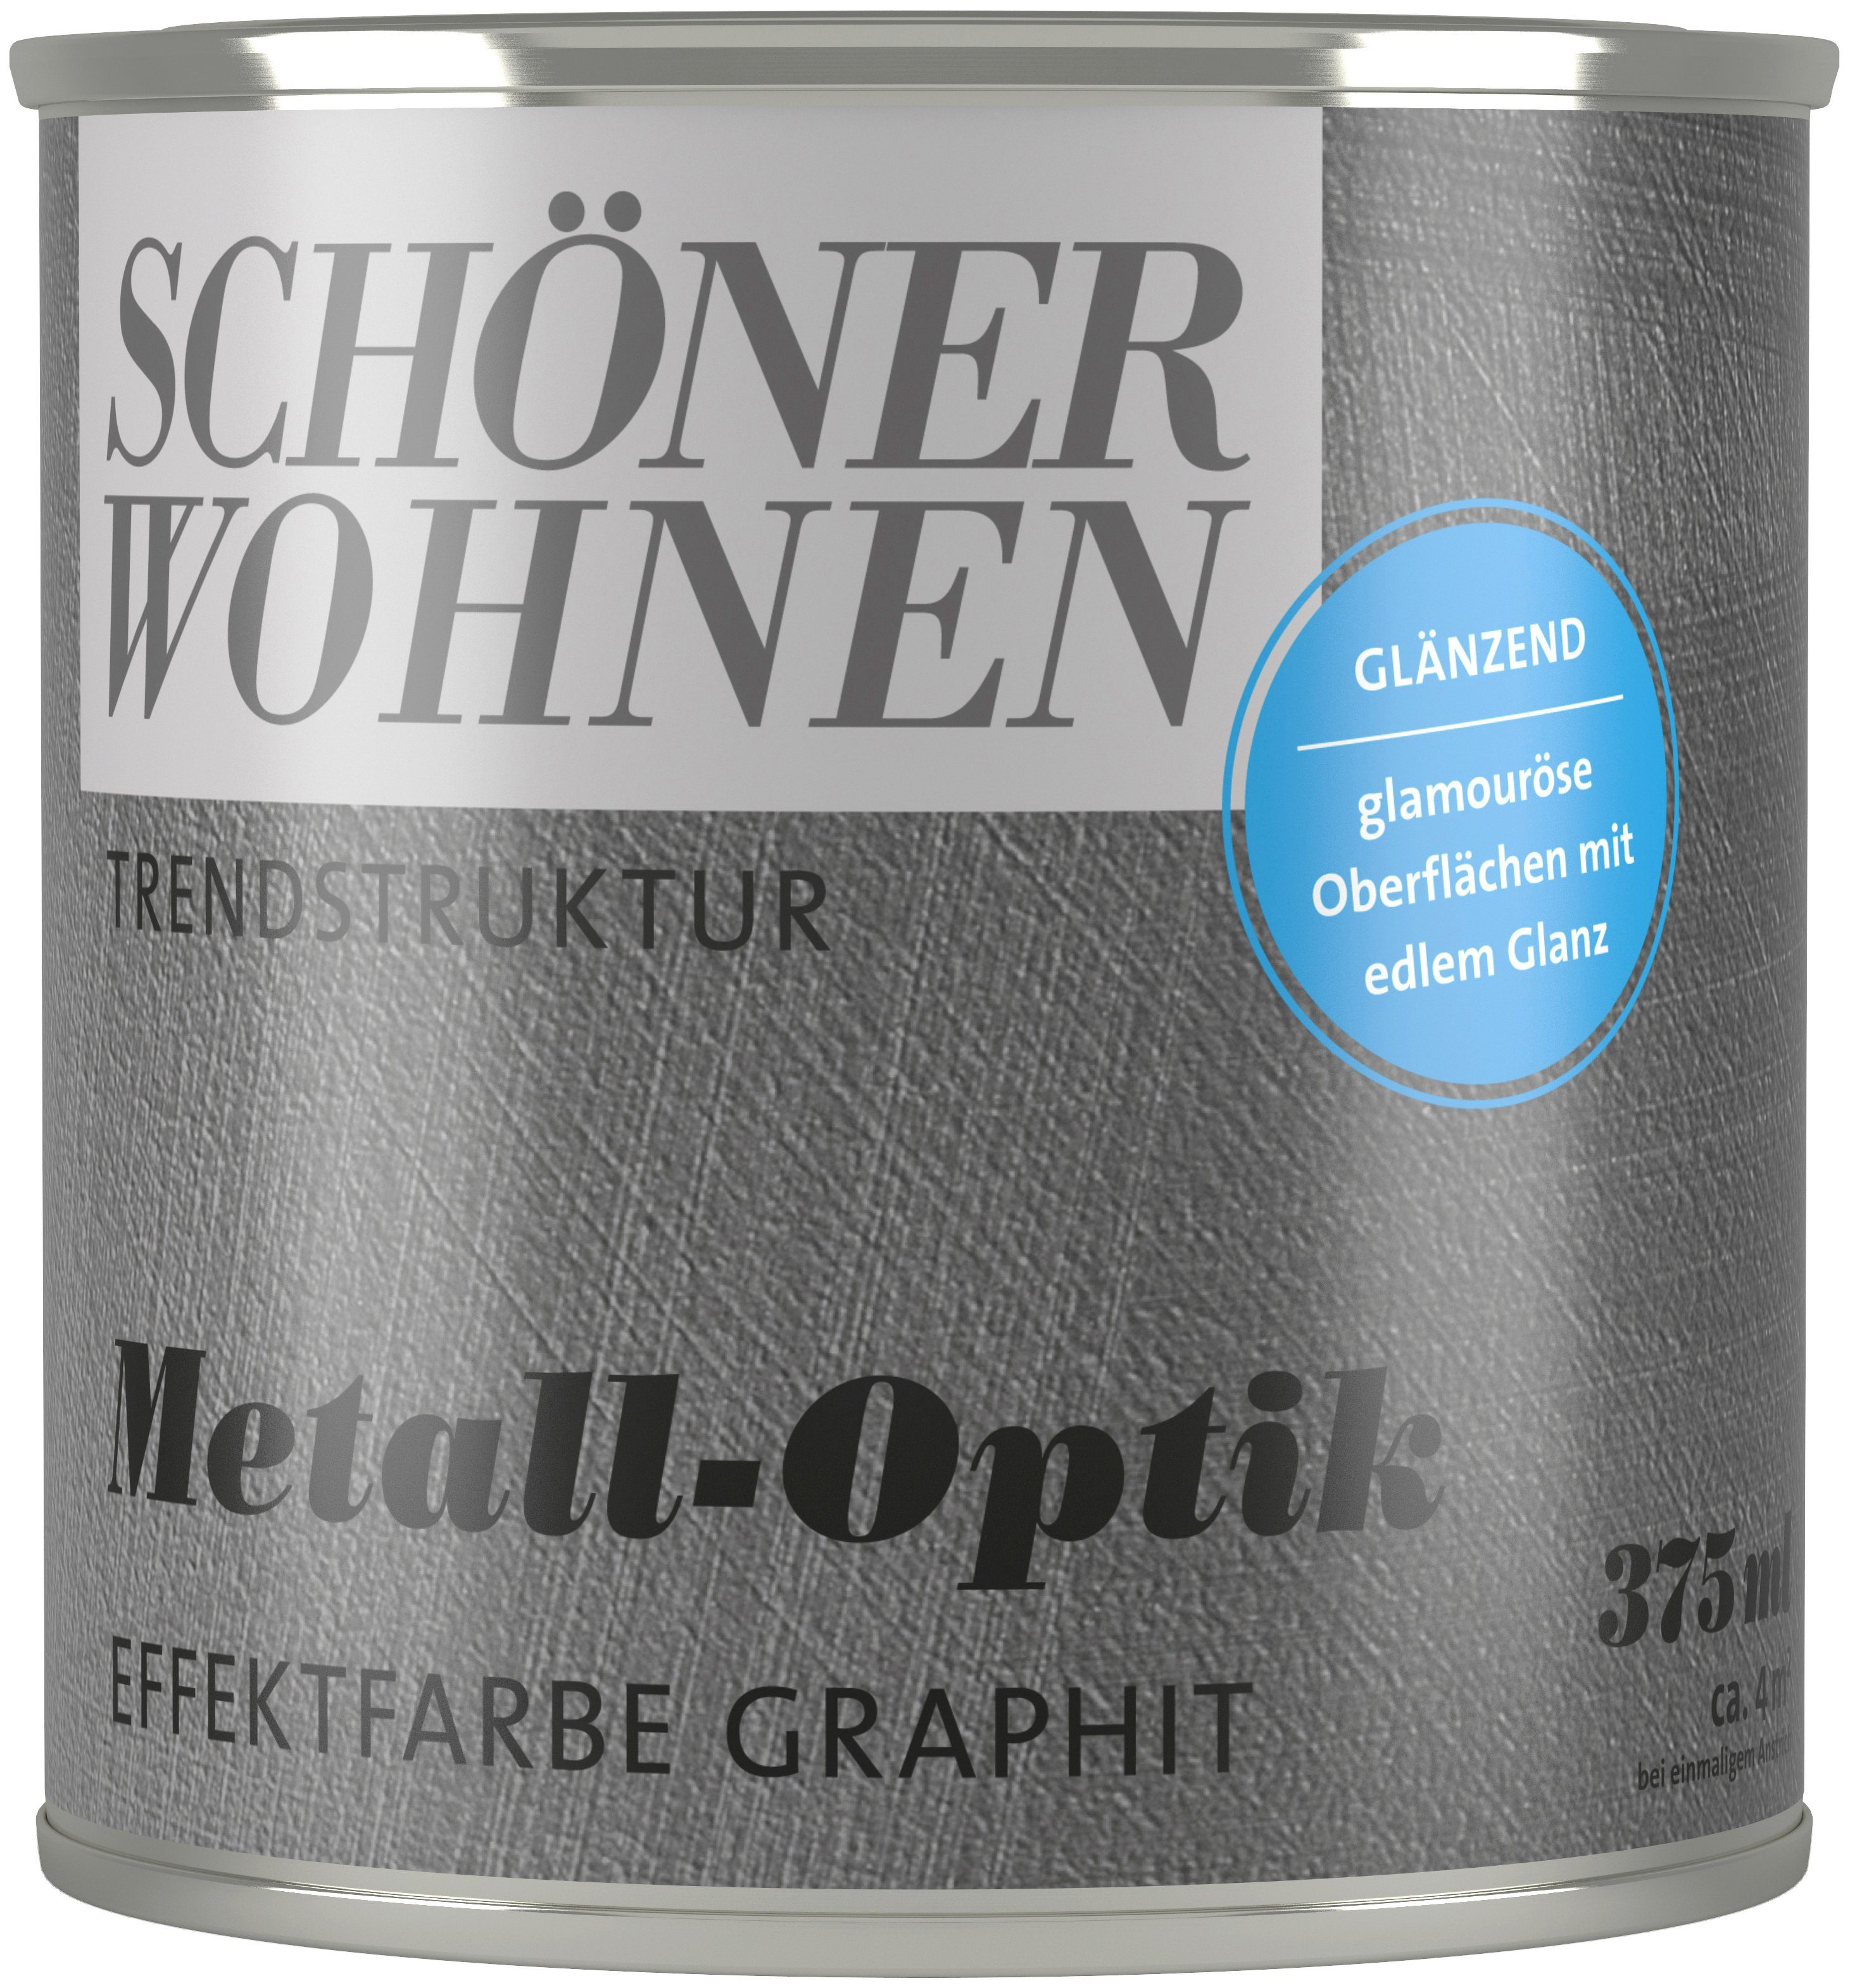 SCHÖNER WOHNEN FARBE Wand- und Deckenfarbe TRENDSTRUKTUR Metall-Optik, 375 ml, glänzende Effektfarbe für metallischen Look